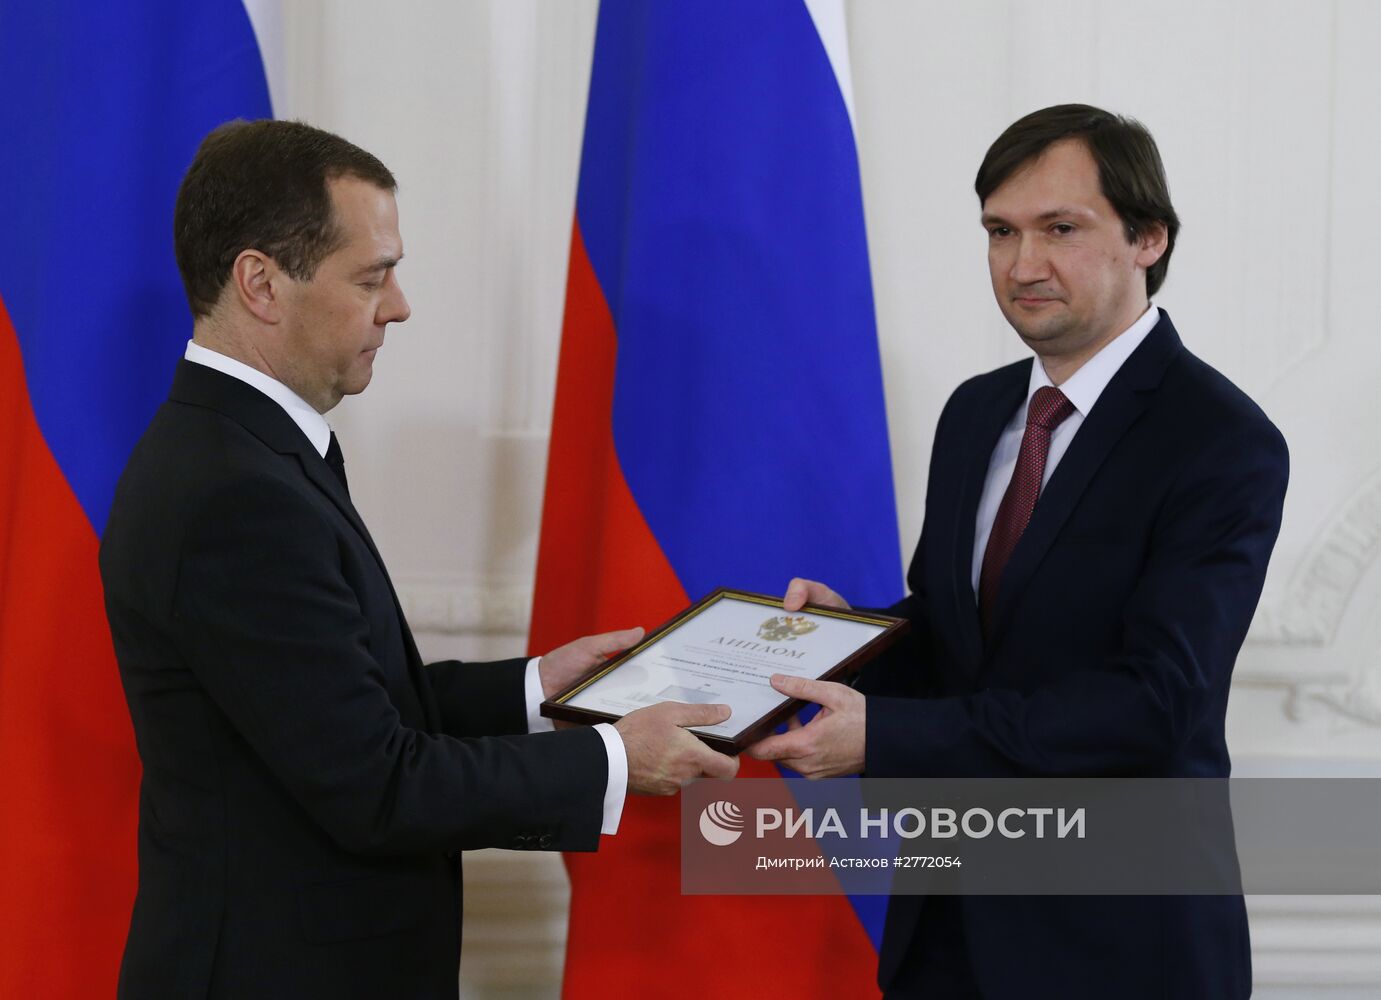 Премьер-министр РФ Д. Медведев вручил премии правительства РФ в области СМИ